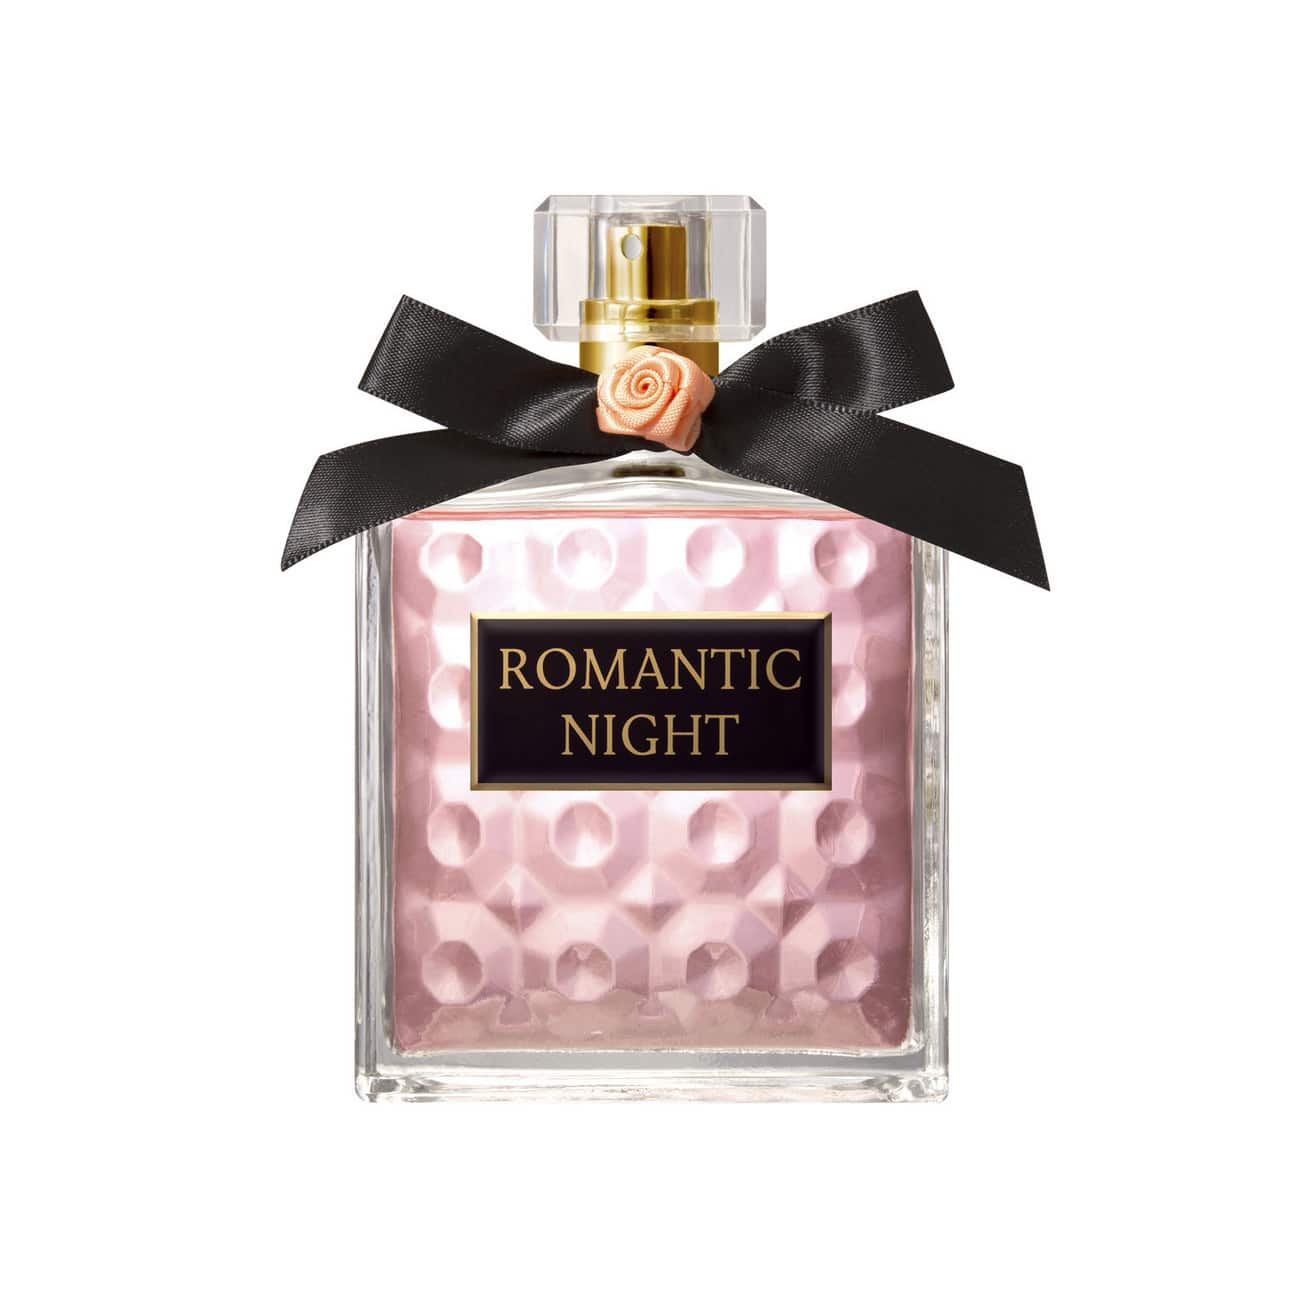 Parfum pour Femmes Romantic Night | Paris Elysees Parfums